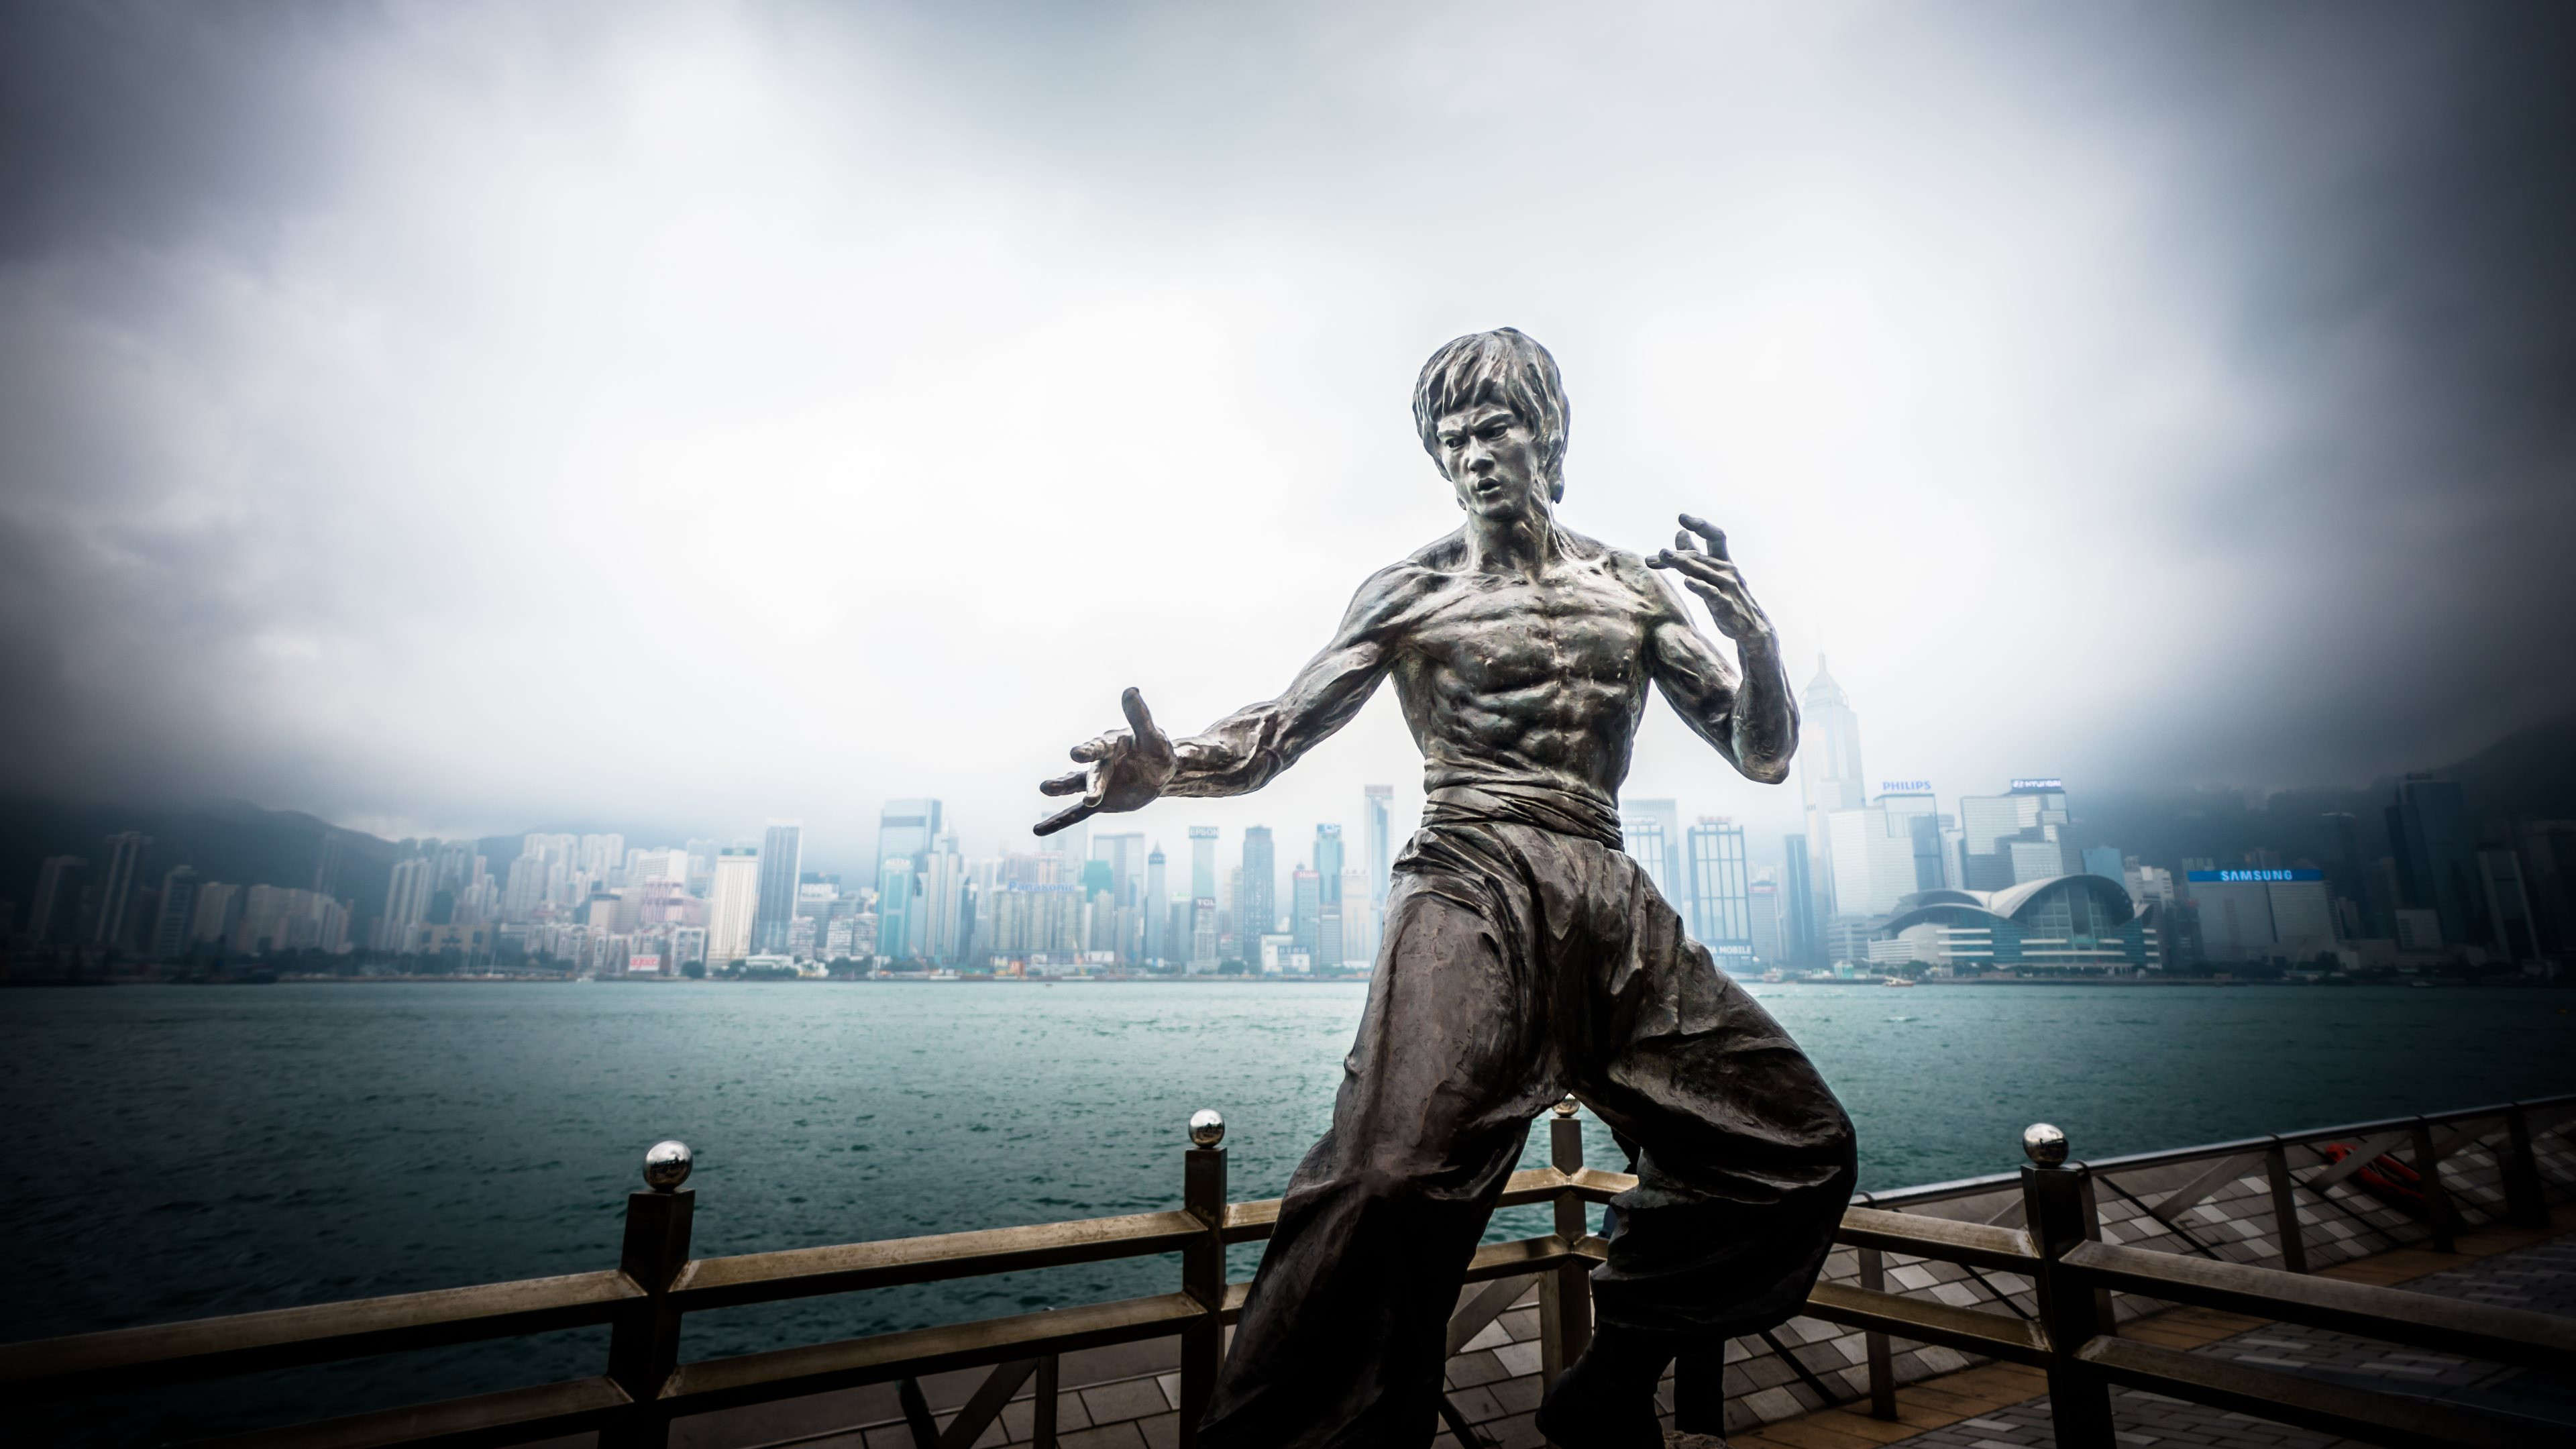 Bruce Lee statue from Hong Kong wallpaper 3840x2160